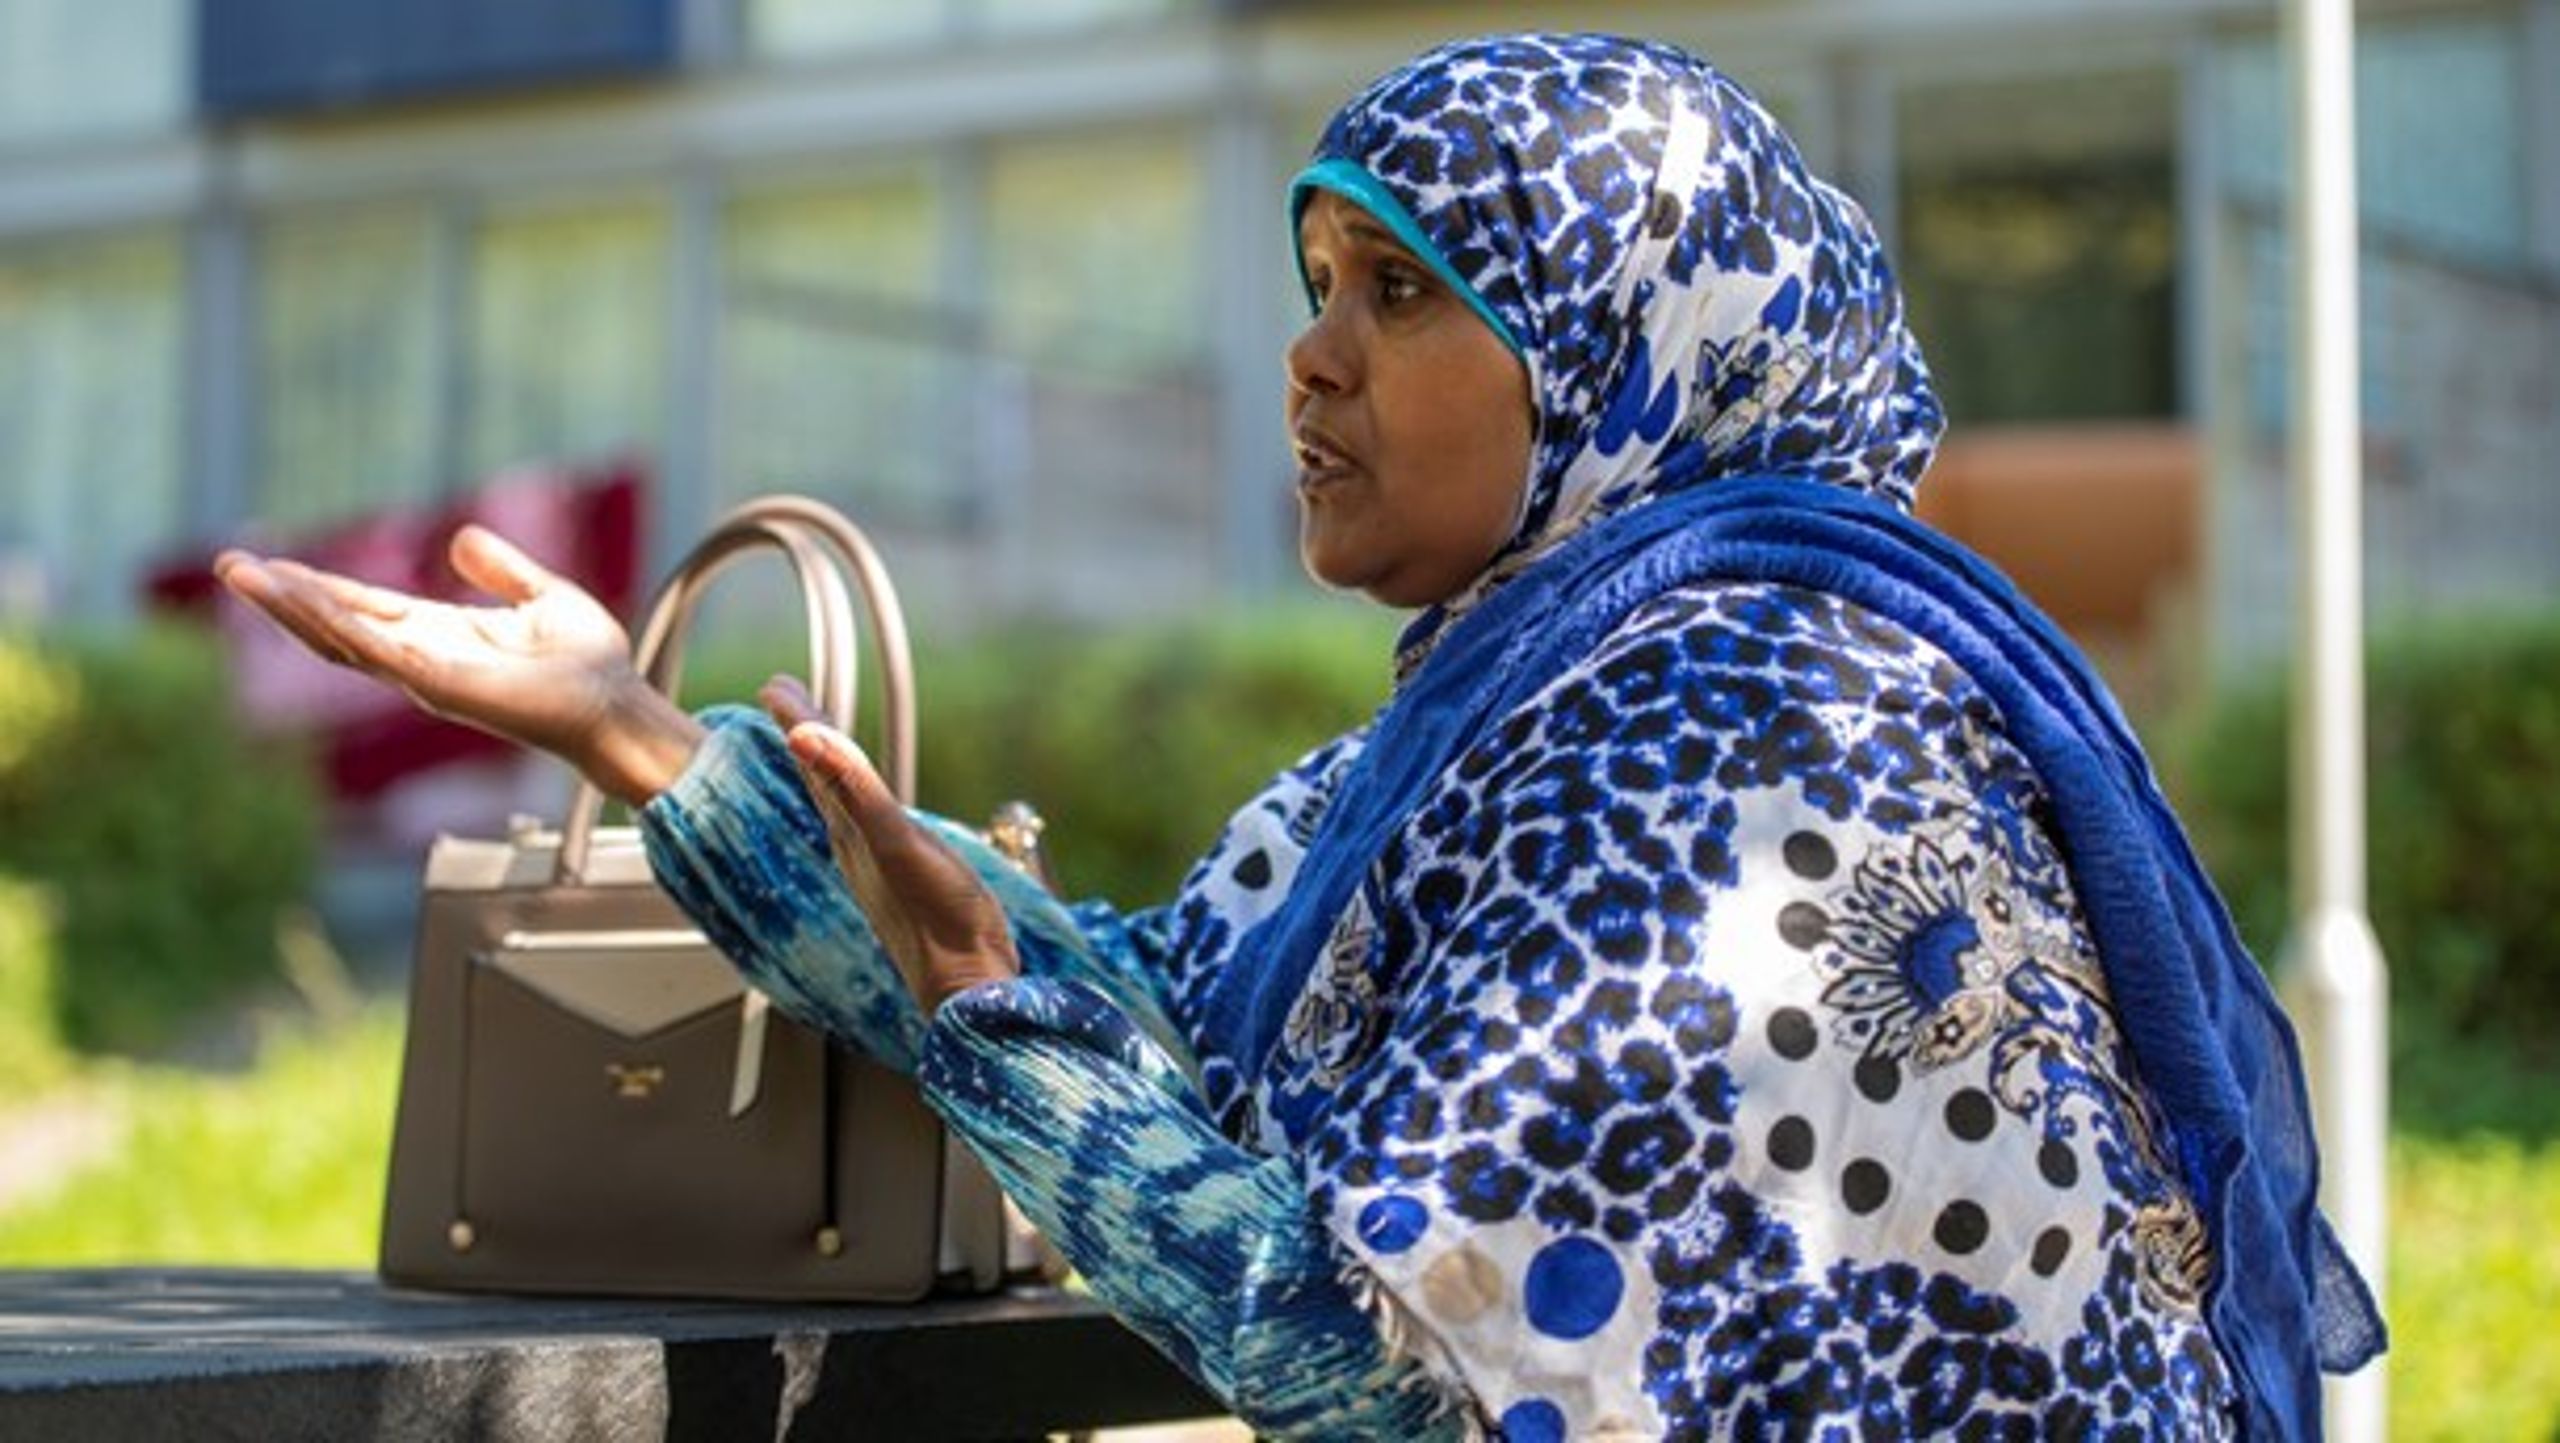 I stedet for at udpege somaliere som særligt smitteramte burde politikere og myndigheder først have henvendt sig direkte til talspersoner fra somaliske foreninger og organisationer, mener Ilham Khalif Mohamed, der er bydelsmor og koordinator i Aarhus-bydelen Gellerup.